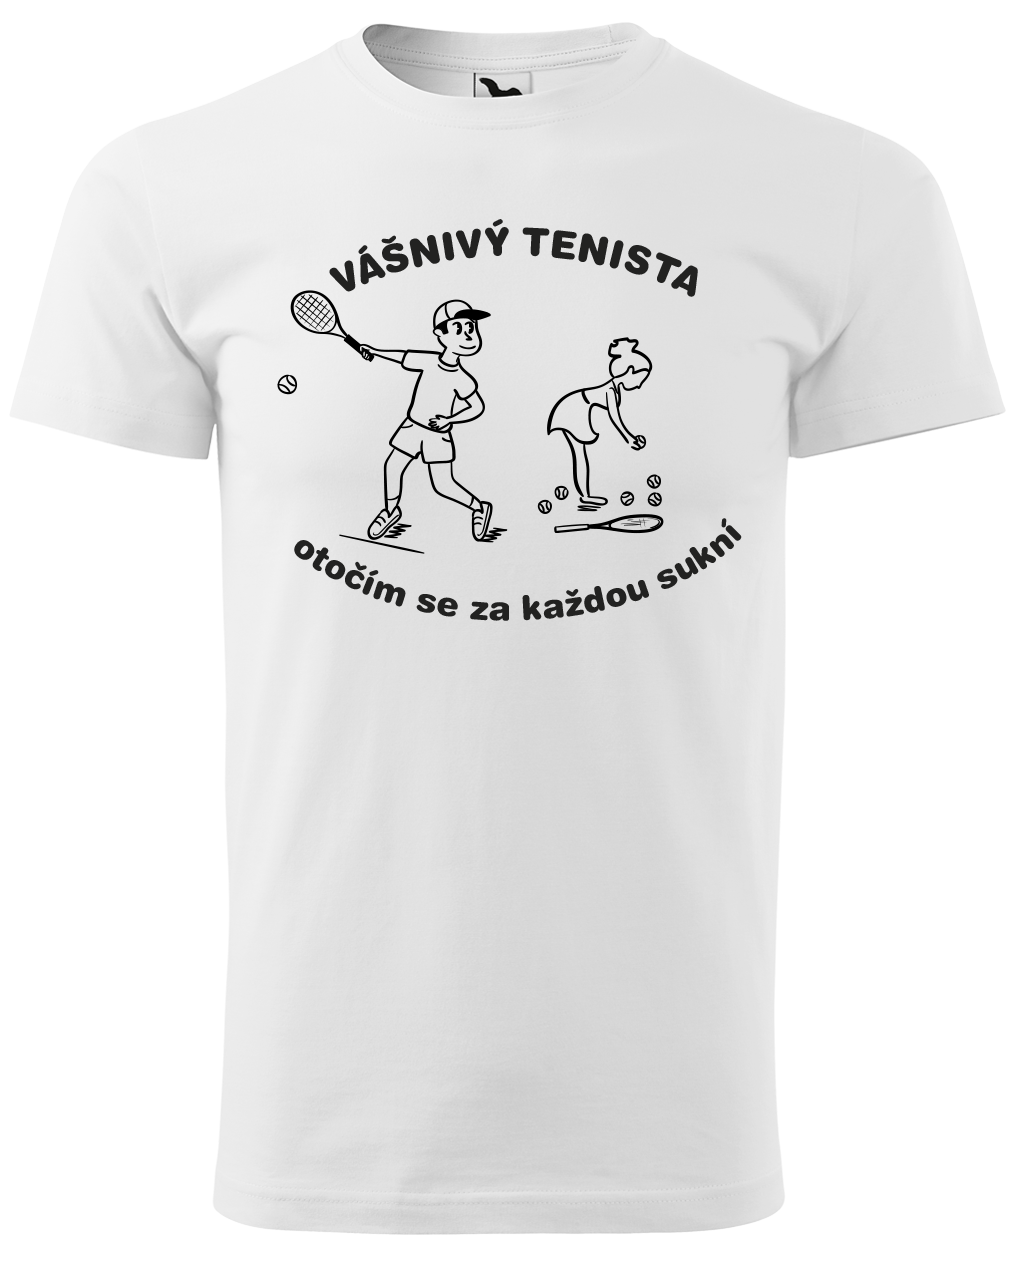 Vtipné tenisové tričko - Vášnivý tenista Velikost: 3XL, Barva: Bílá (00)